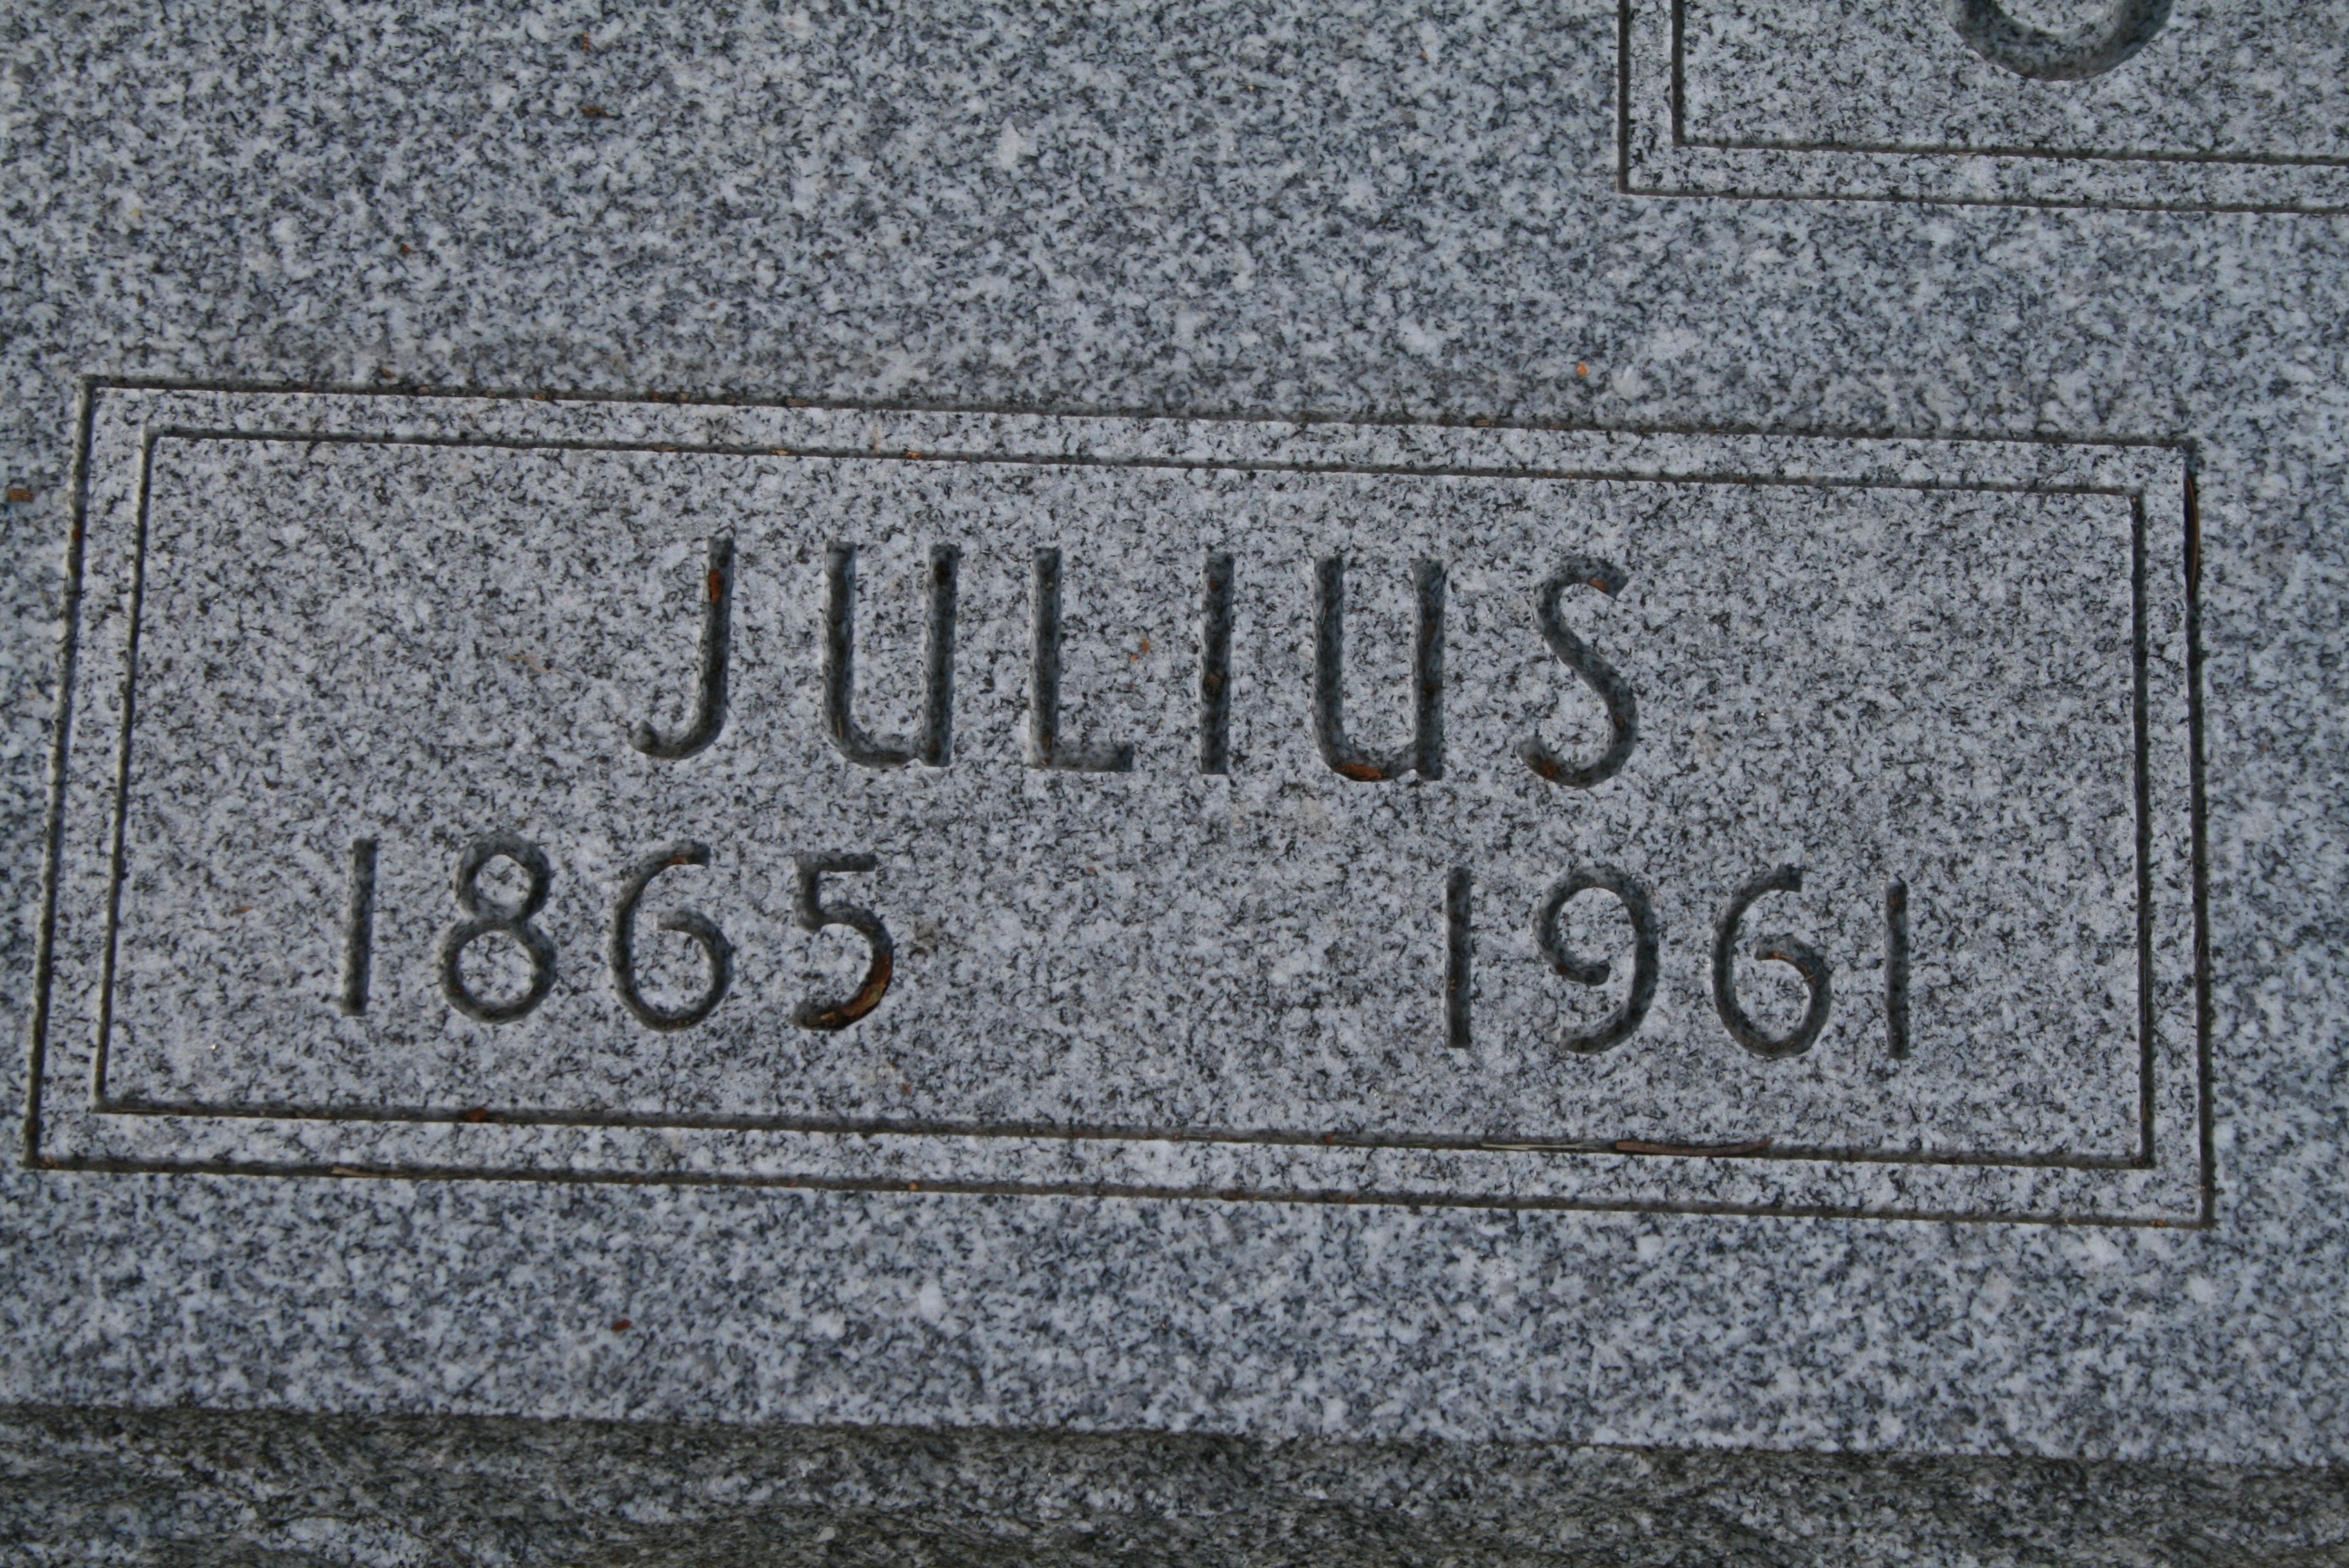 Strauss, Julius